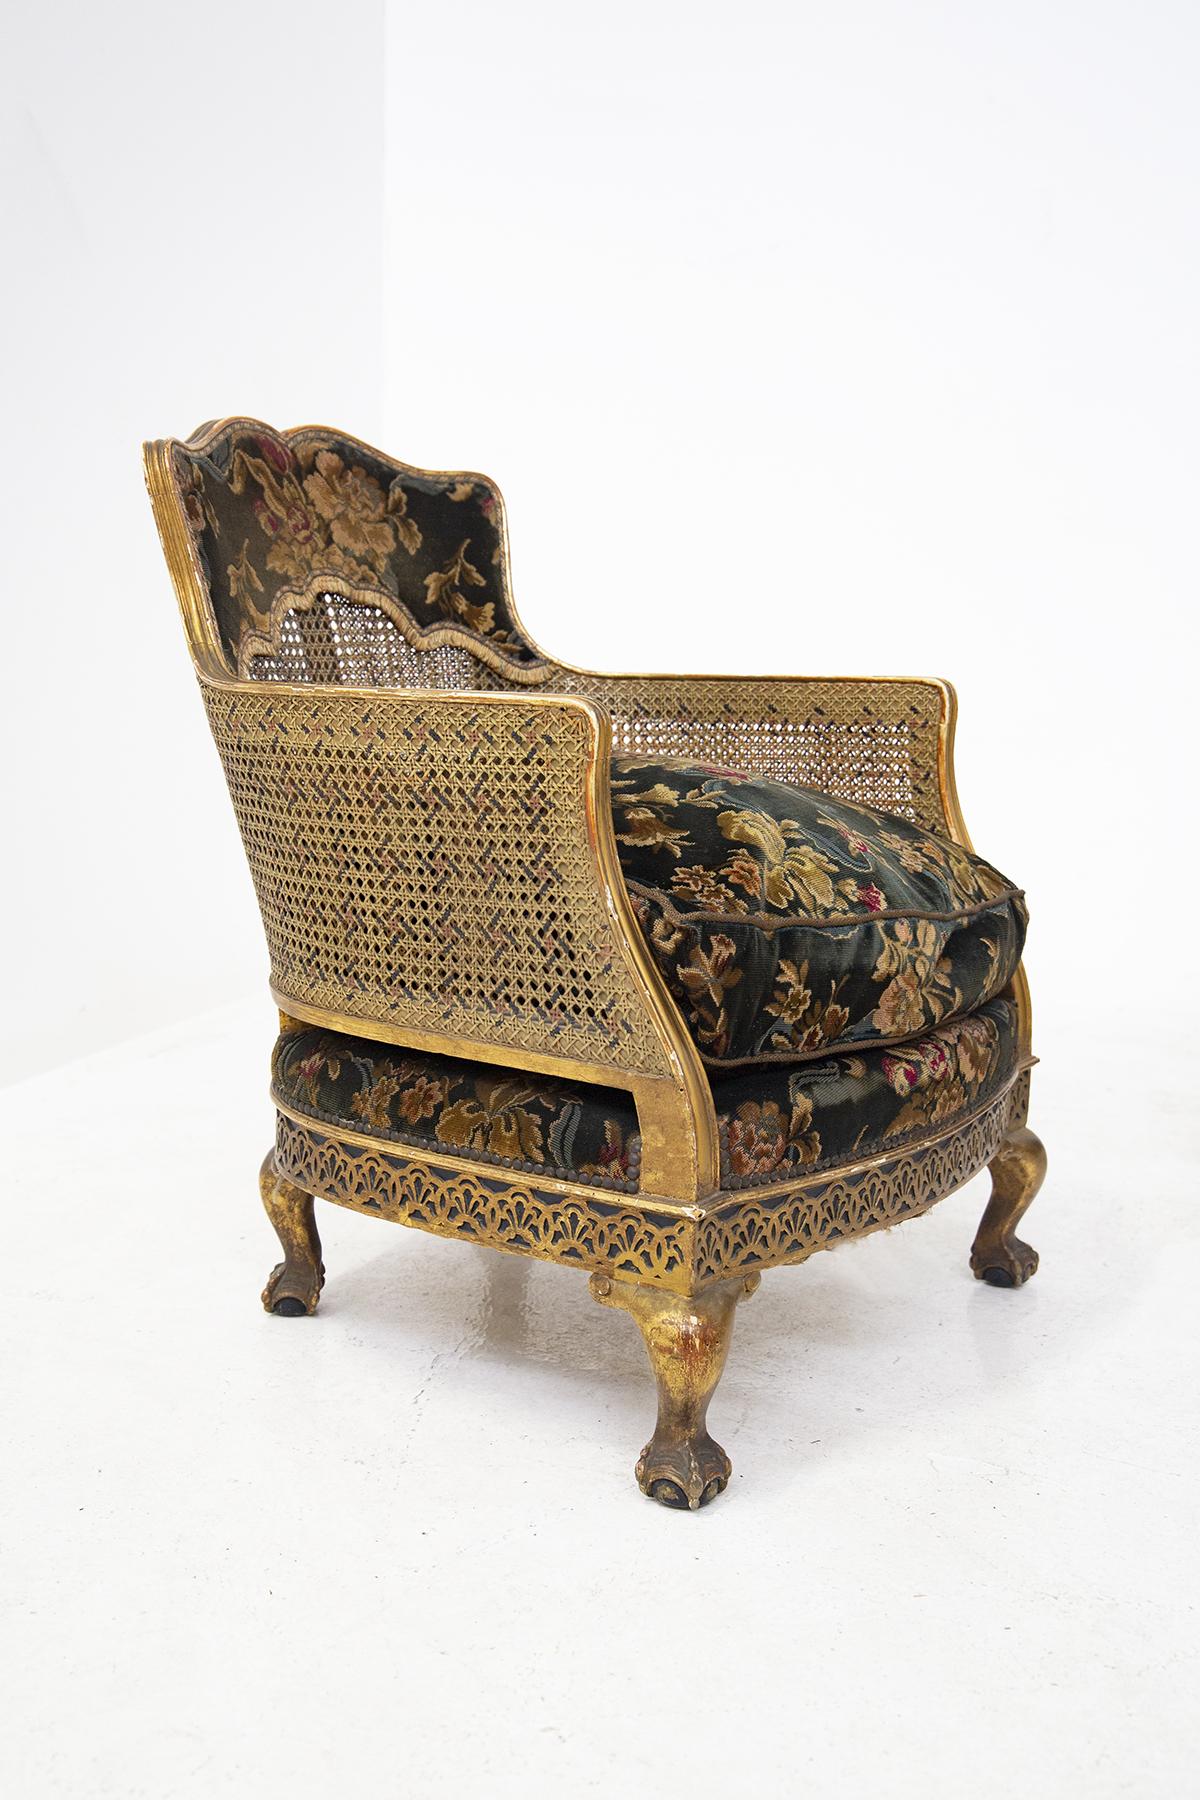 Prächtiges Sesselpaar, entworfen Ende 1800, aus feiner französischer Fertigung.
Die Sessel sind im orientalischen Stil gehalten, wie man an den gewundenen und geschwungenen Formen und dem Flechtmuster erkennen kann.
Die Sessel haben geschwungene